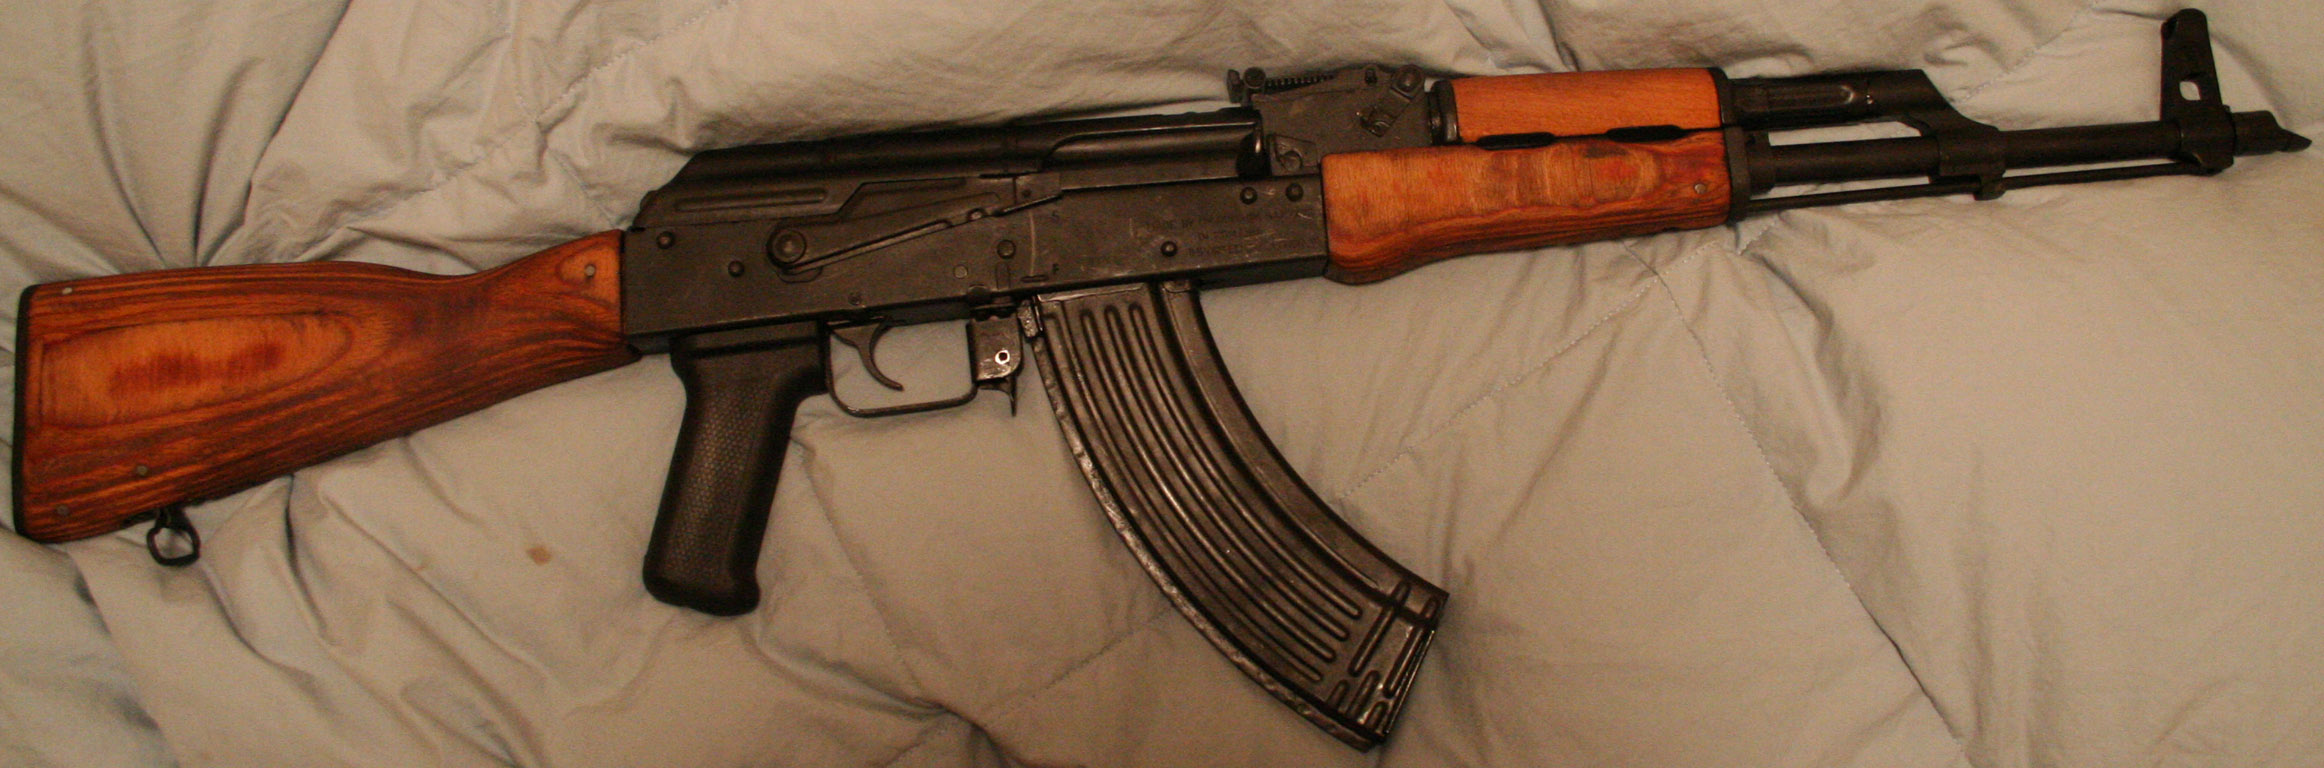 AK 47 Weapon Gun 2324x768